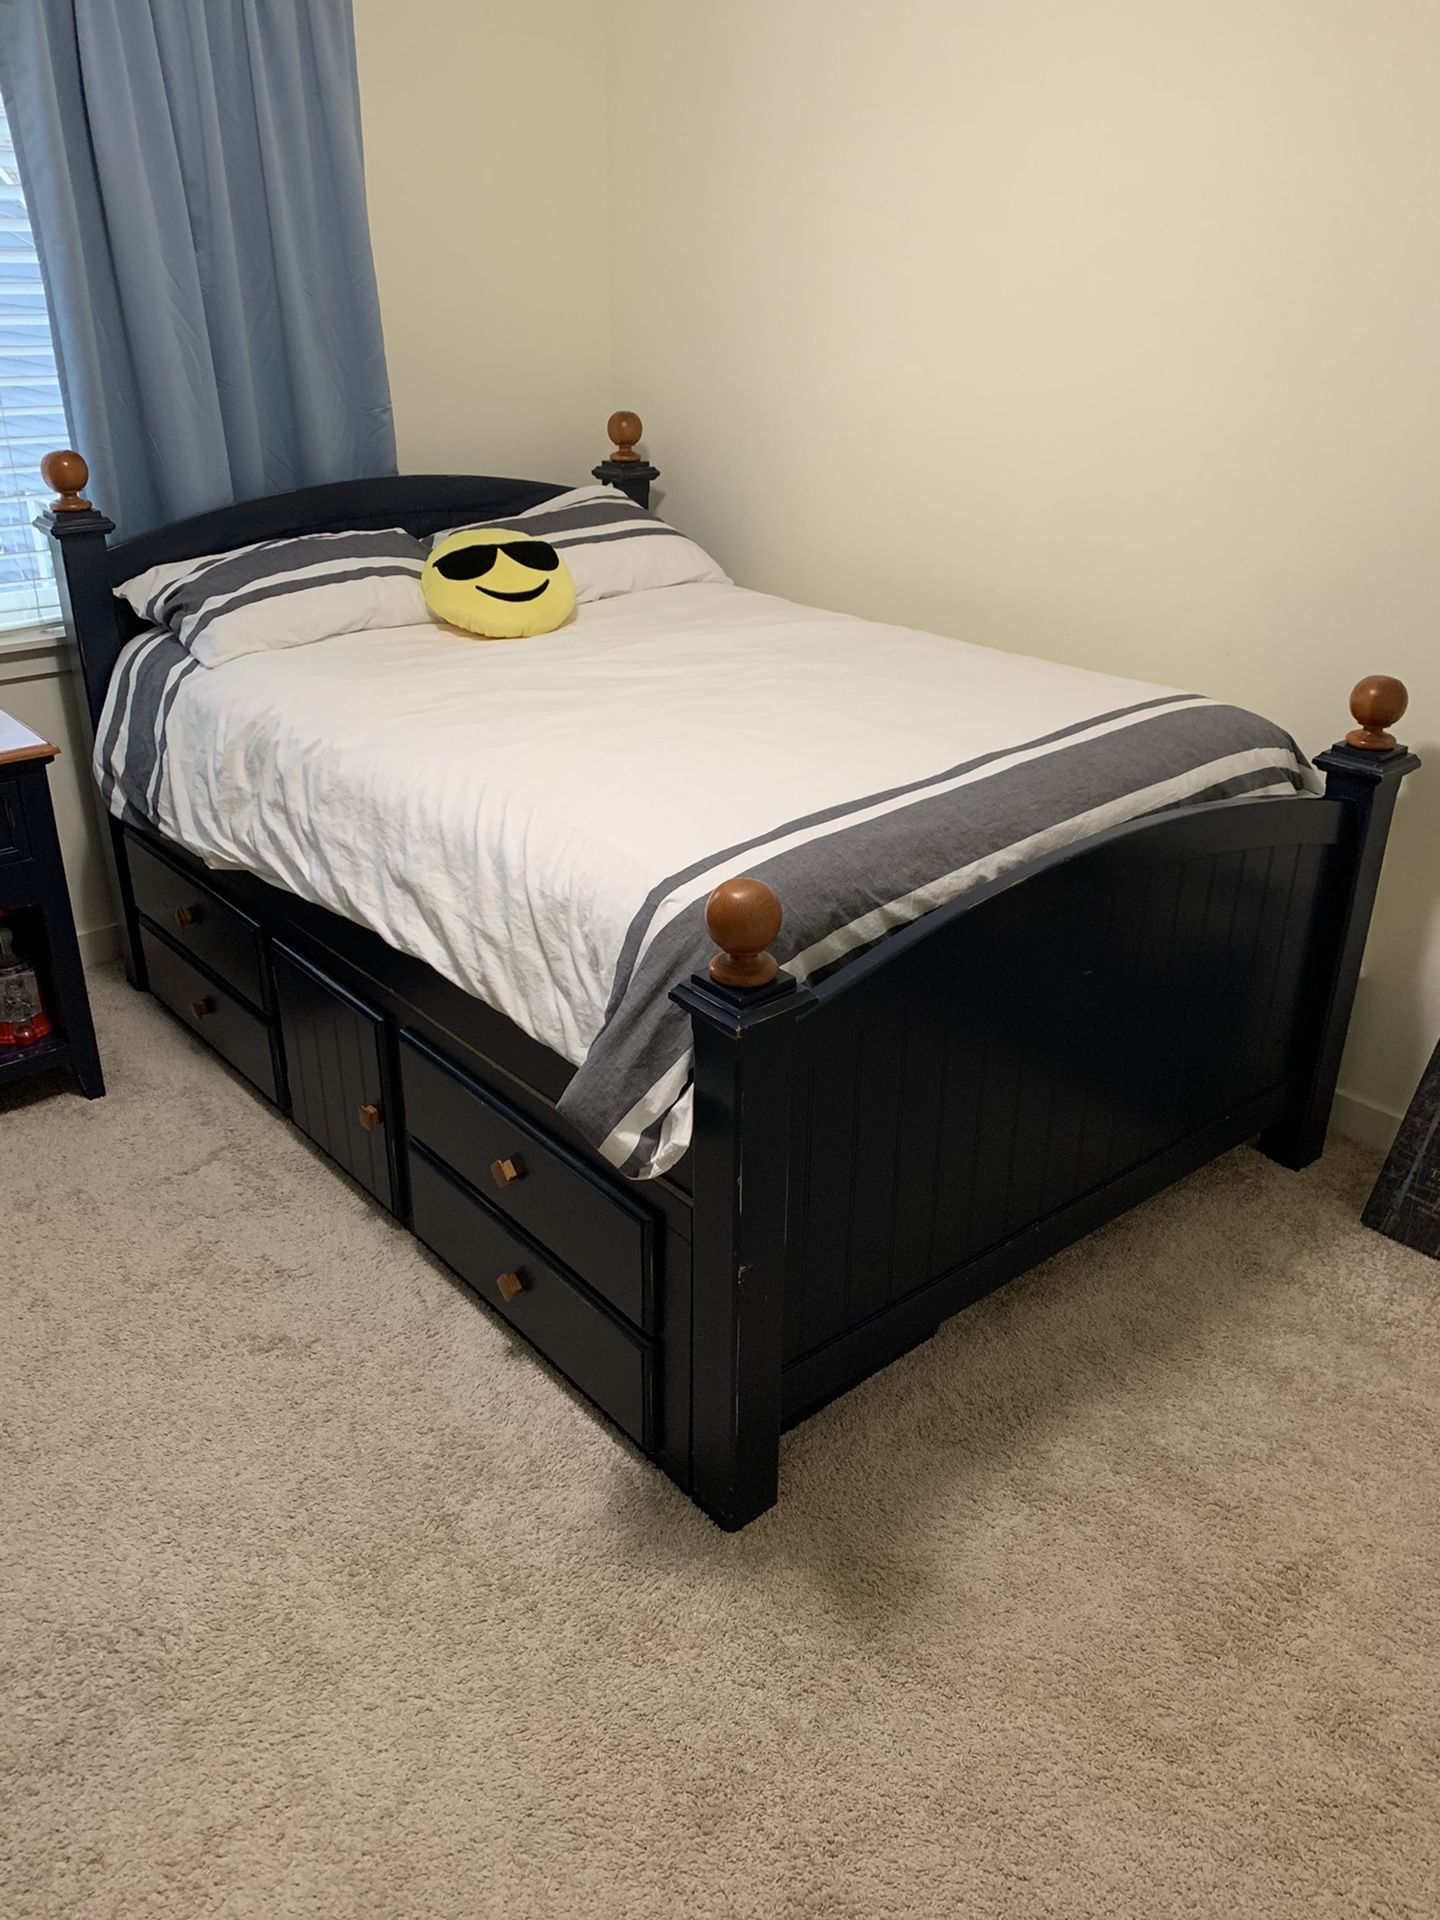 Bedroom set /Bed frame full size/ nightstand/ desk